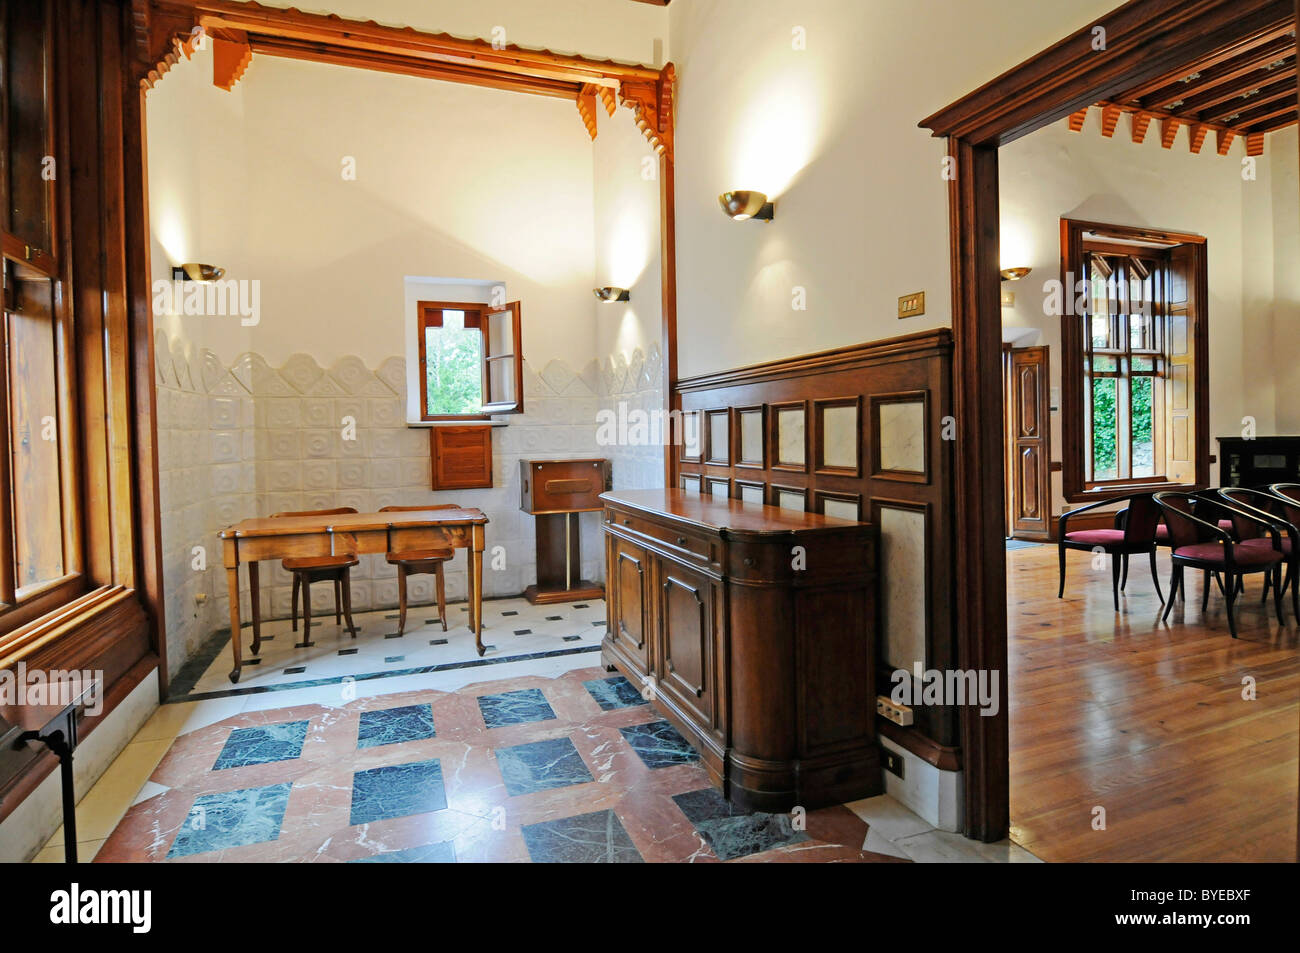 Interior, furniture, El Capricho de Gaudi manor, architect Antoni Gaudí, Comillas, Cantabria, Spain, Europe Stock Photo